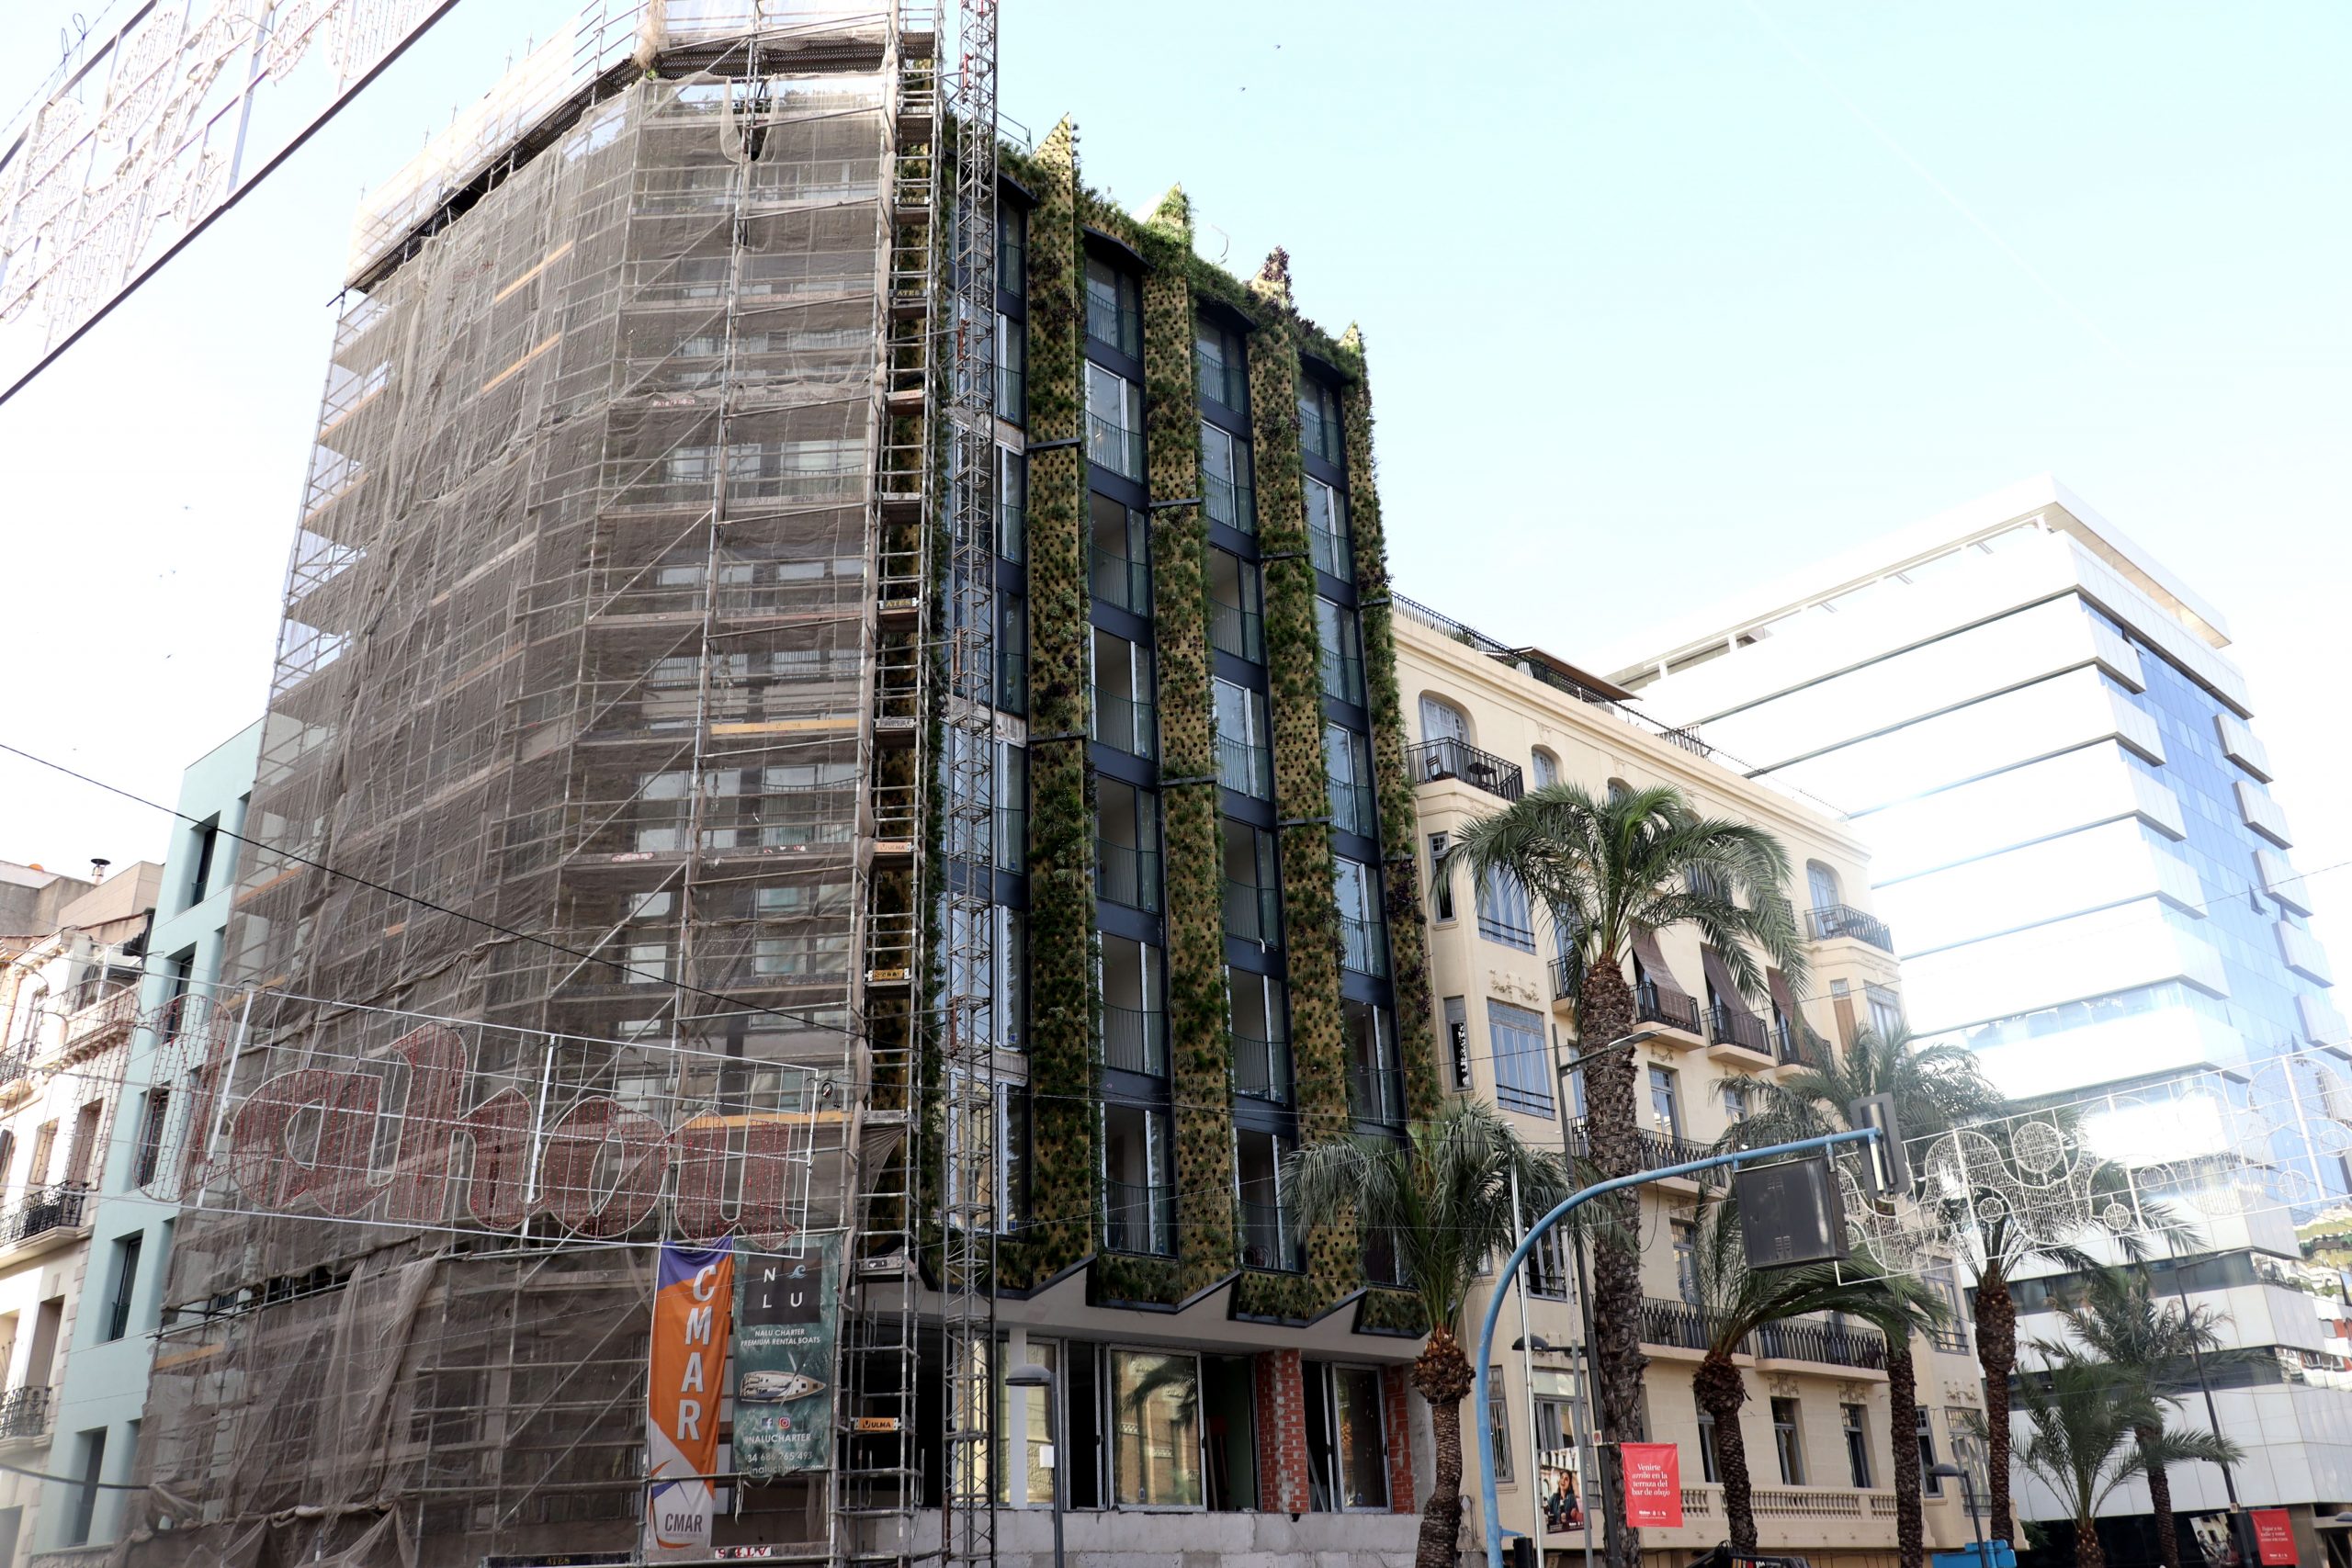 Proceso de montaje del jardín vertical en el edificio suiters, Alicante